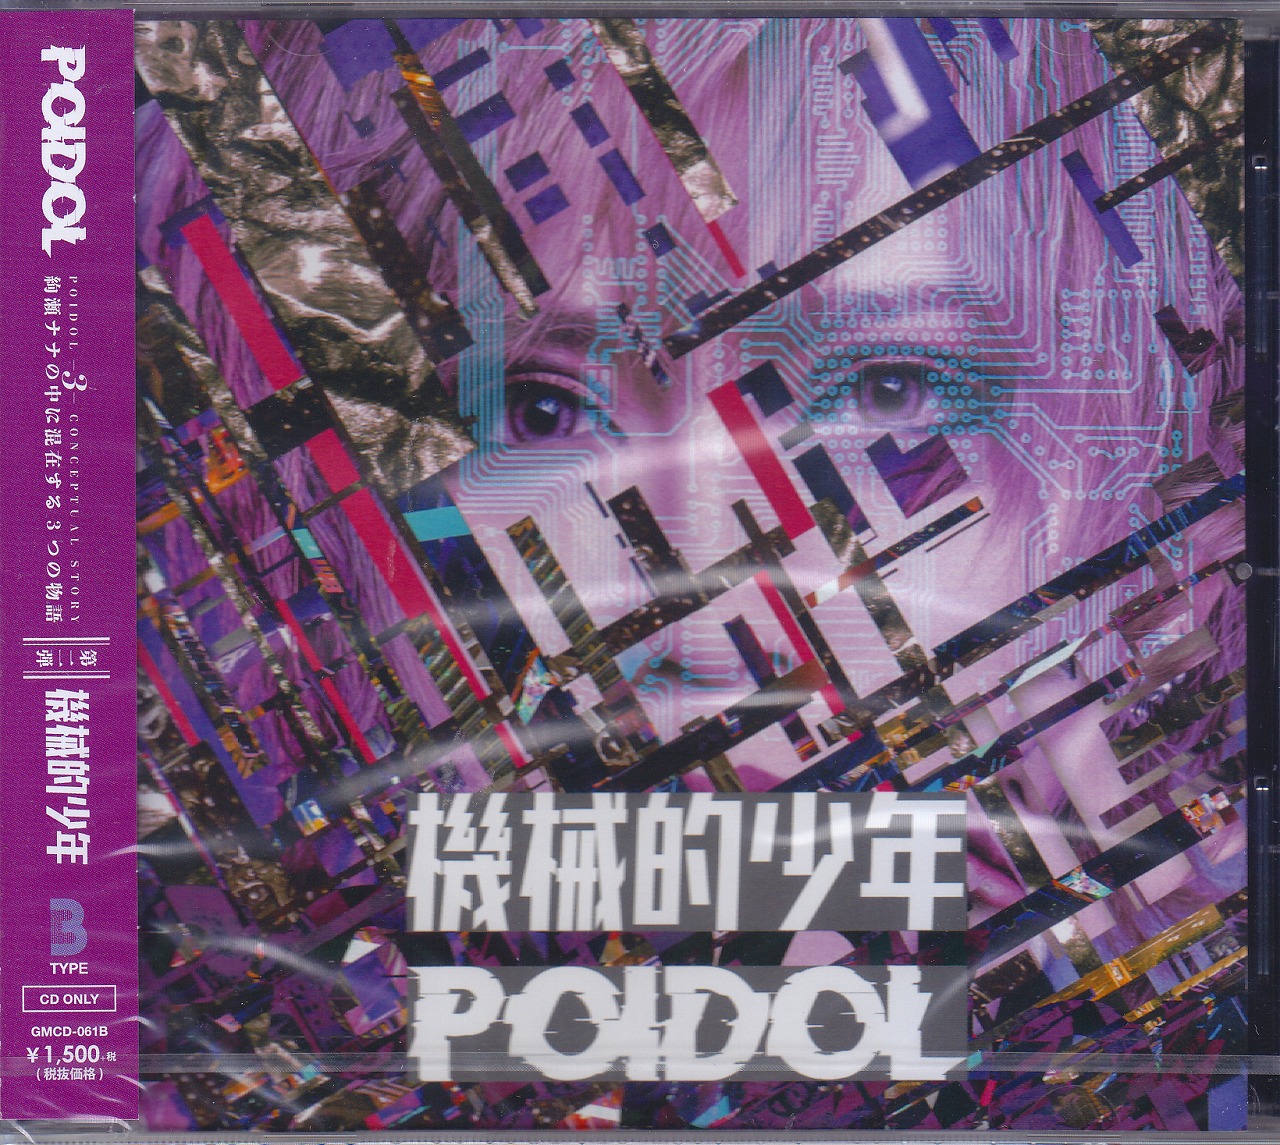 ポイドル の CD 【Btype】機械的少年